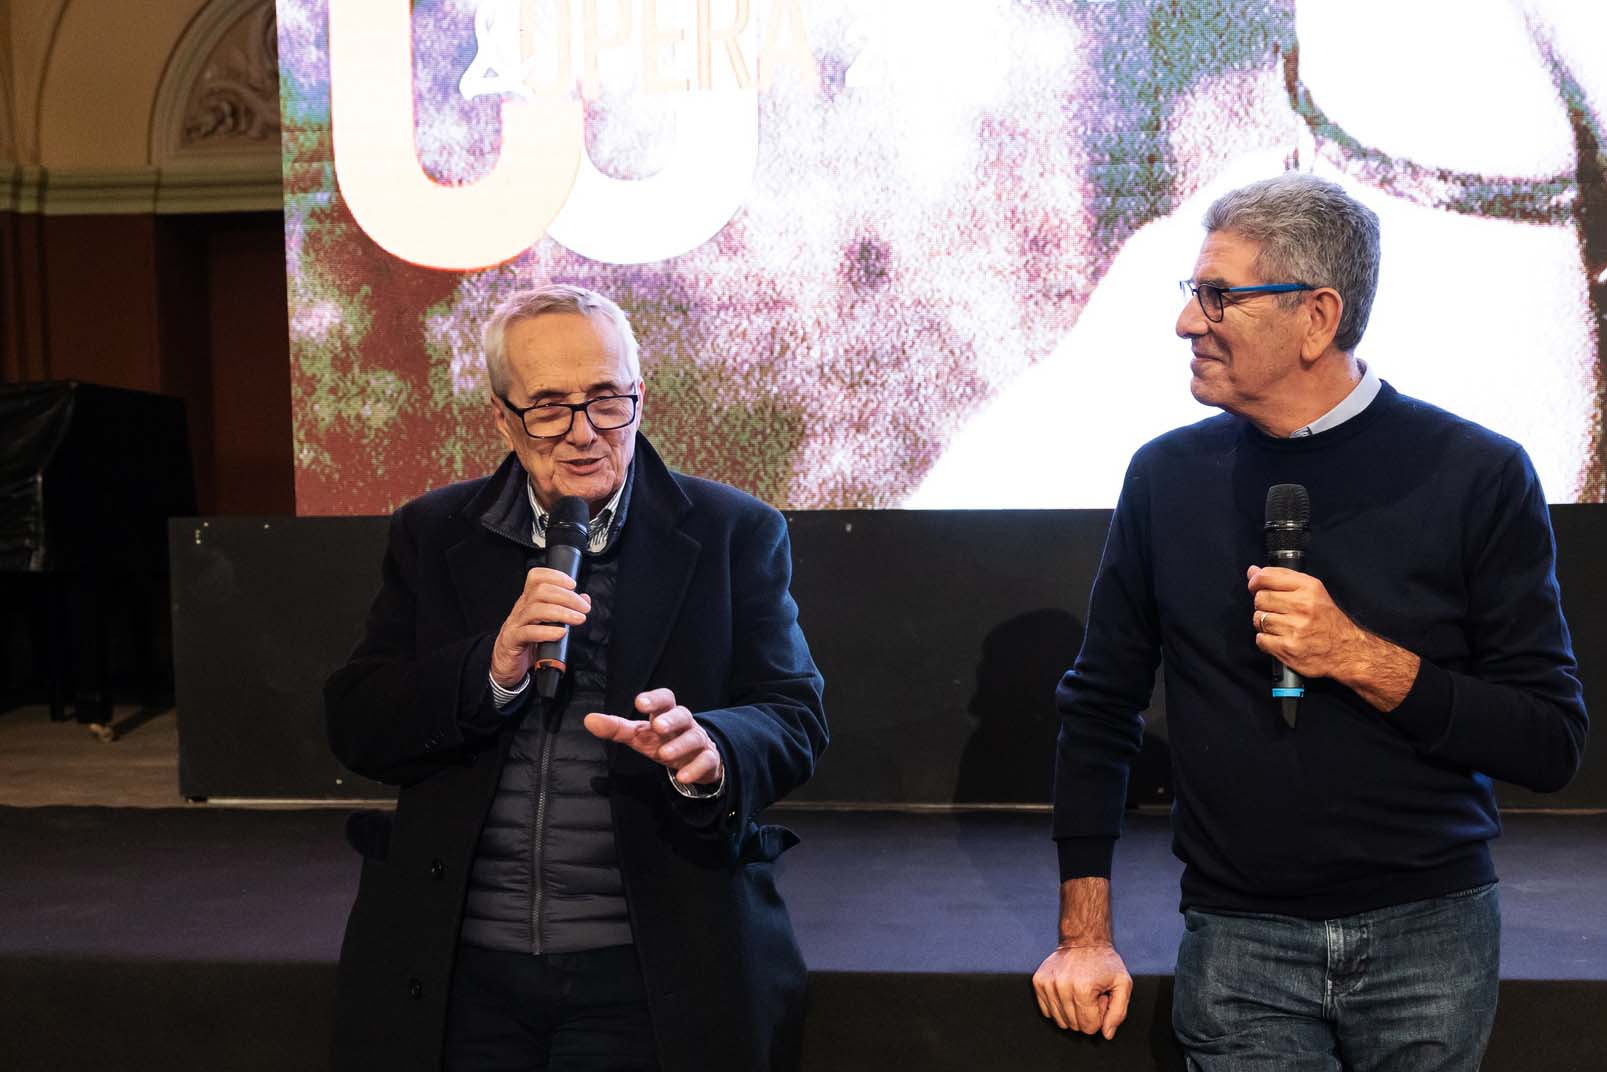 Il regista Marco Bellocchio e il direttore artistico Ninni Panzera dopo la proiezione